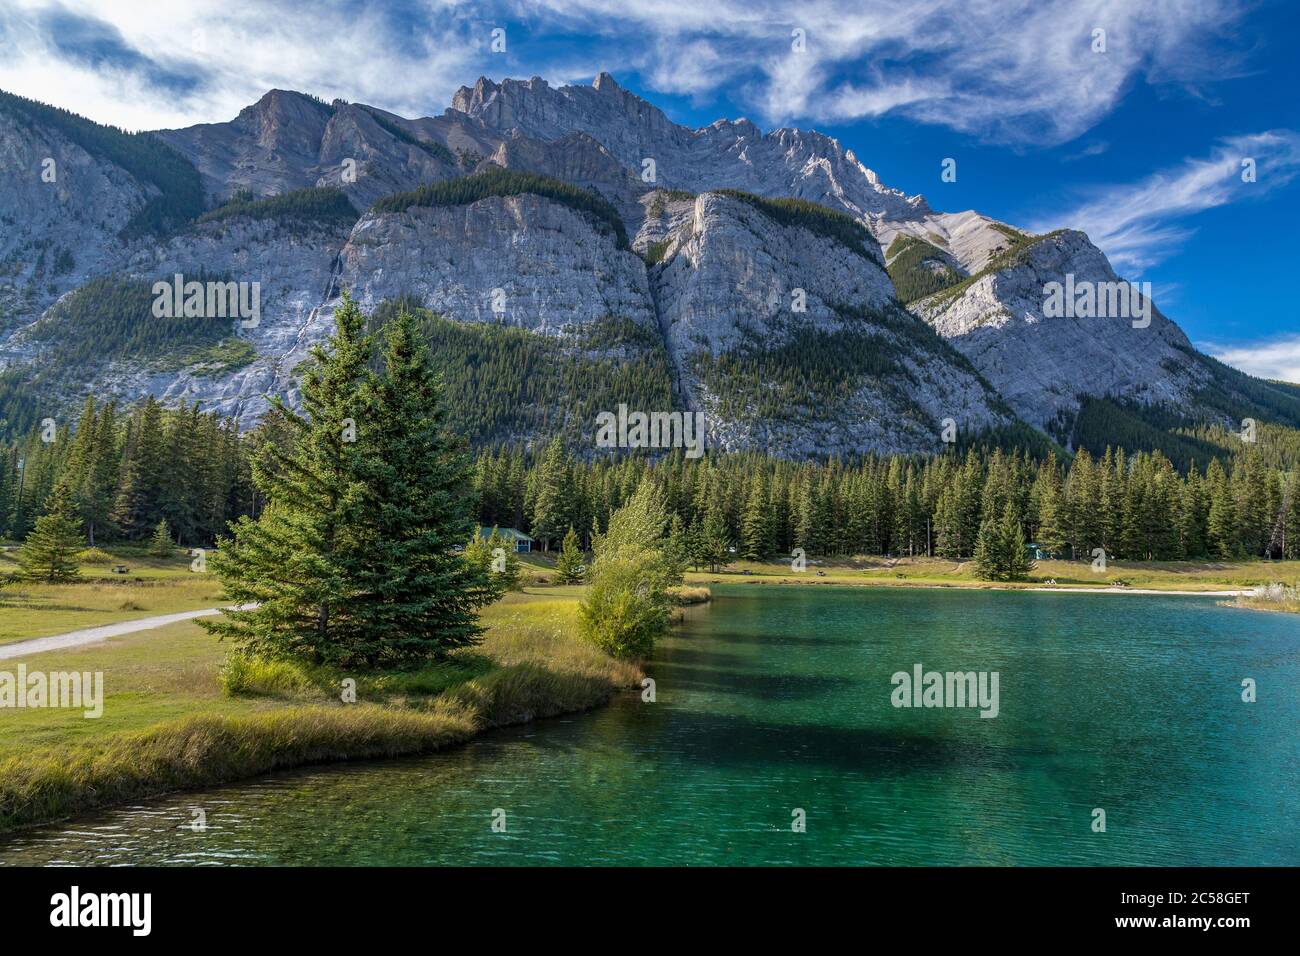 Vue à couper le souffle sur la montagne Cascade, qui surplombe les étangs de Cascade et les eaux turquoise, parc national Banff, Alberta, Canada Banque D'Images